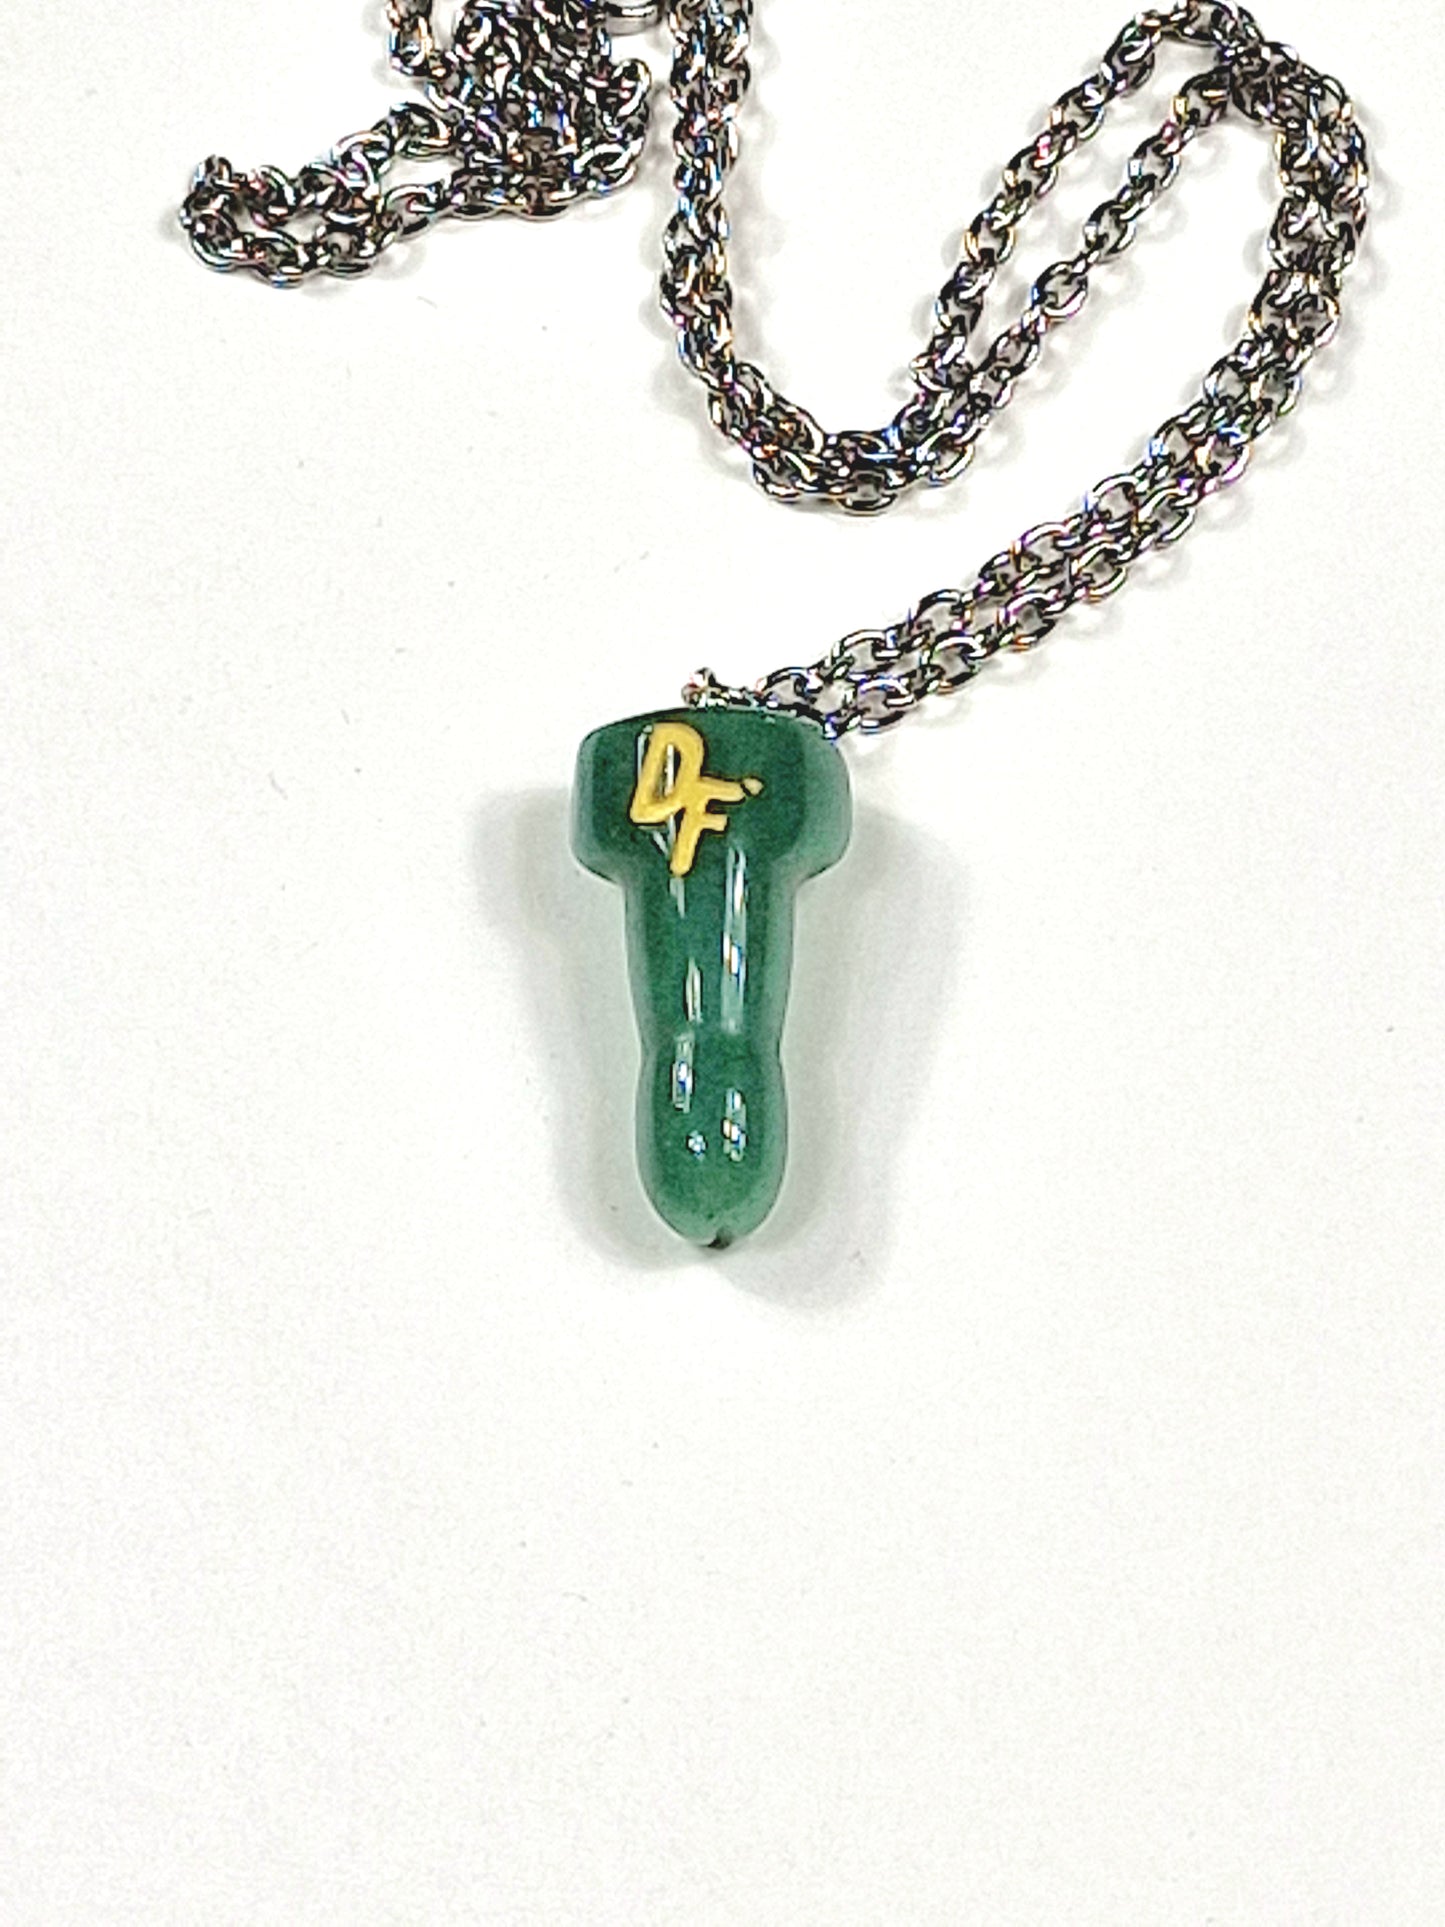 Ett vackert halsband med en snopp eller penis av kristallen grön aventurin